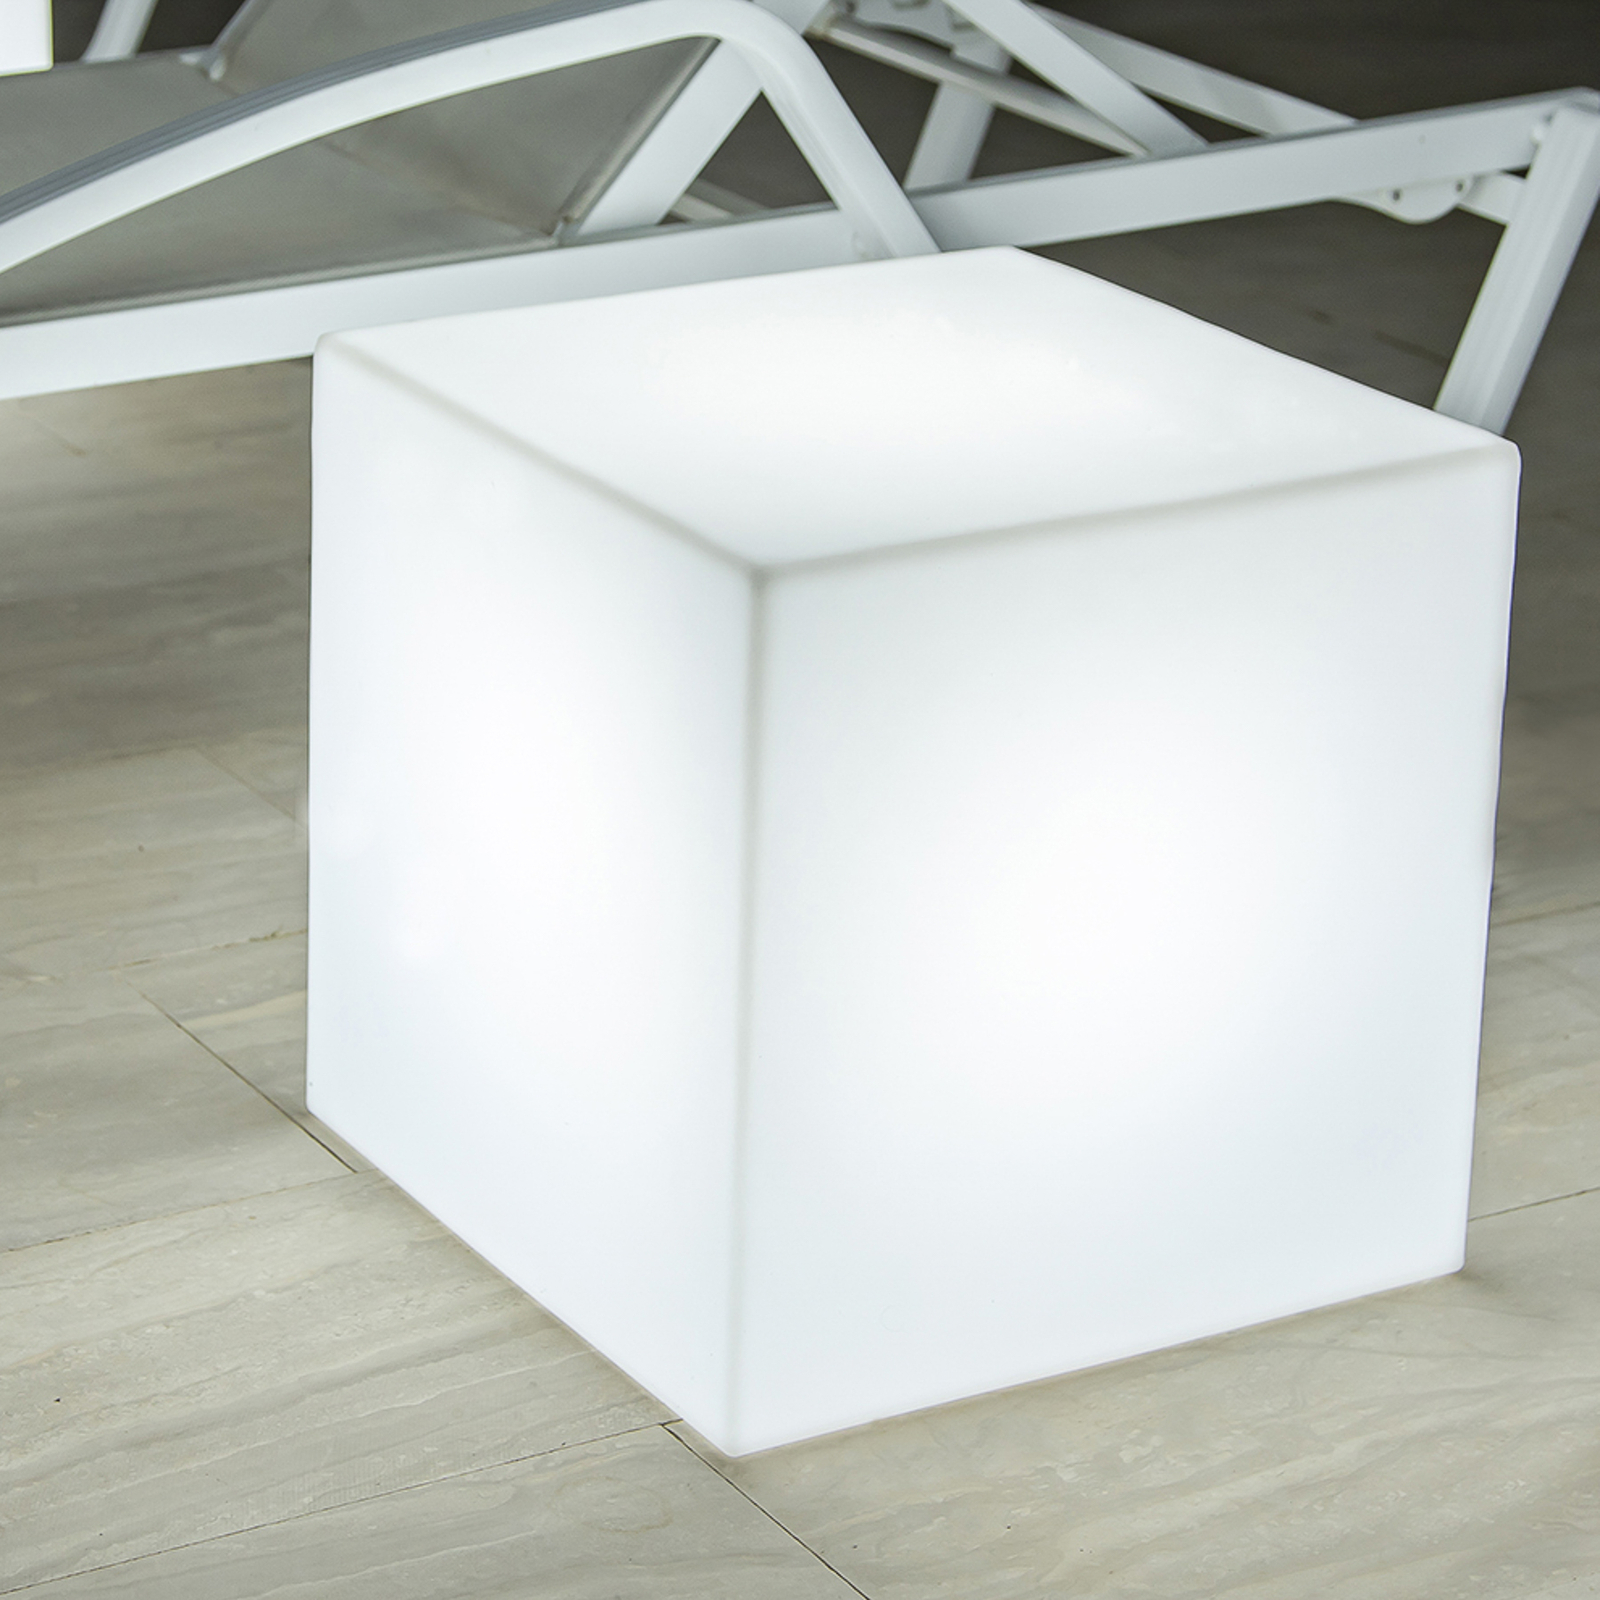 Newgarden Cuby LED-aurinkovalaisin, 40 x 40 cm, Newgarden Cuby, 40 x 40 cm